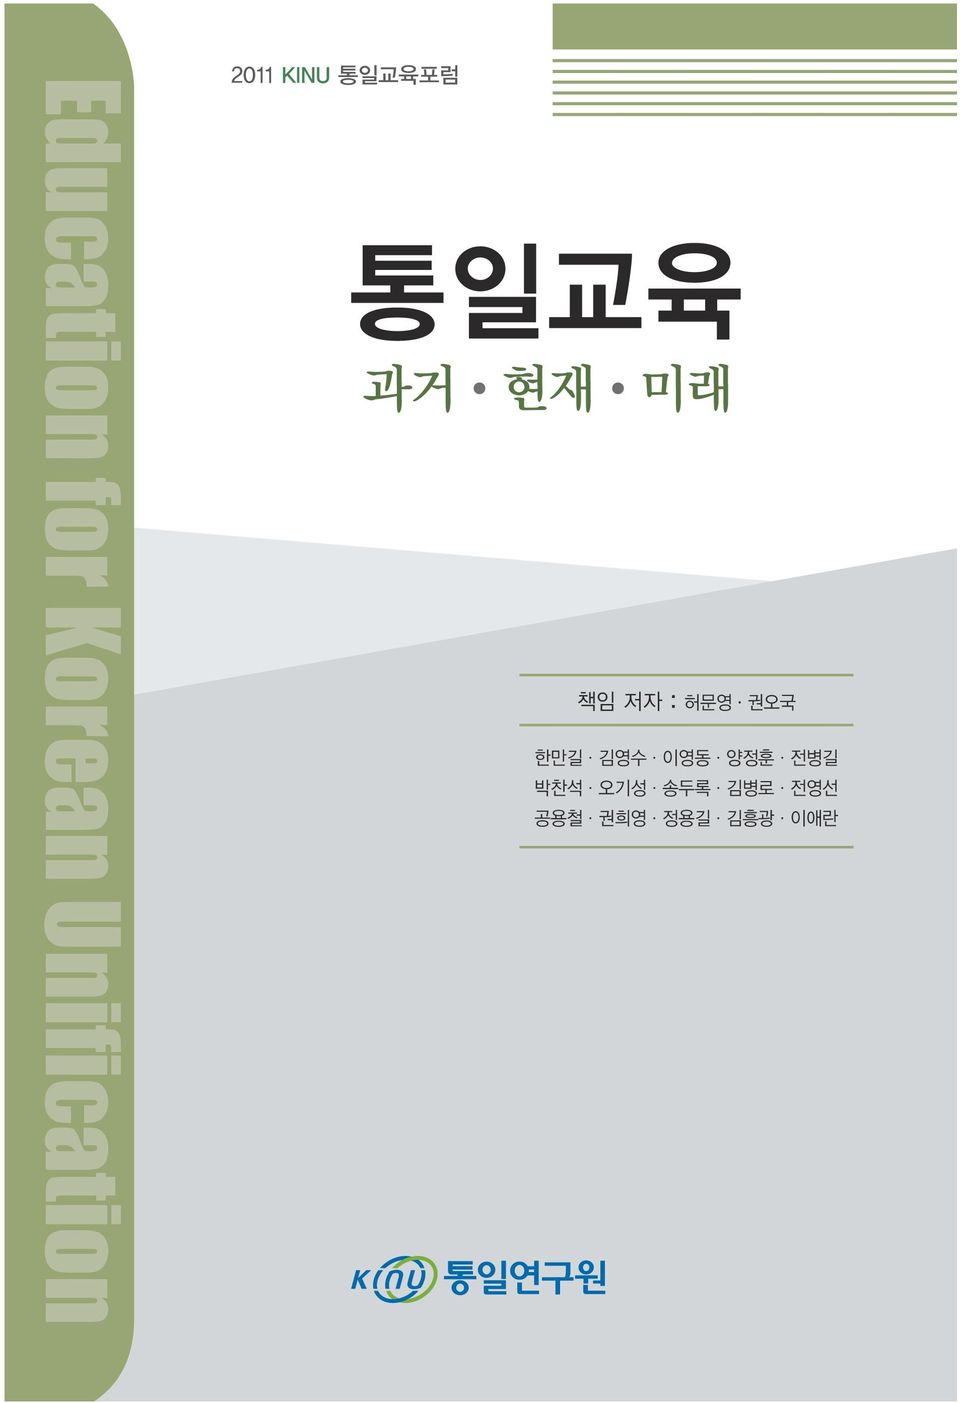 저자 : 허문영 권오국 한만길 김영수 이영동 양정훈 전병길